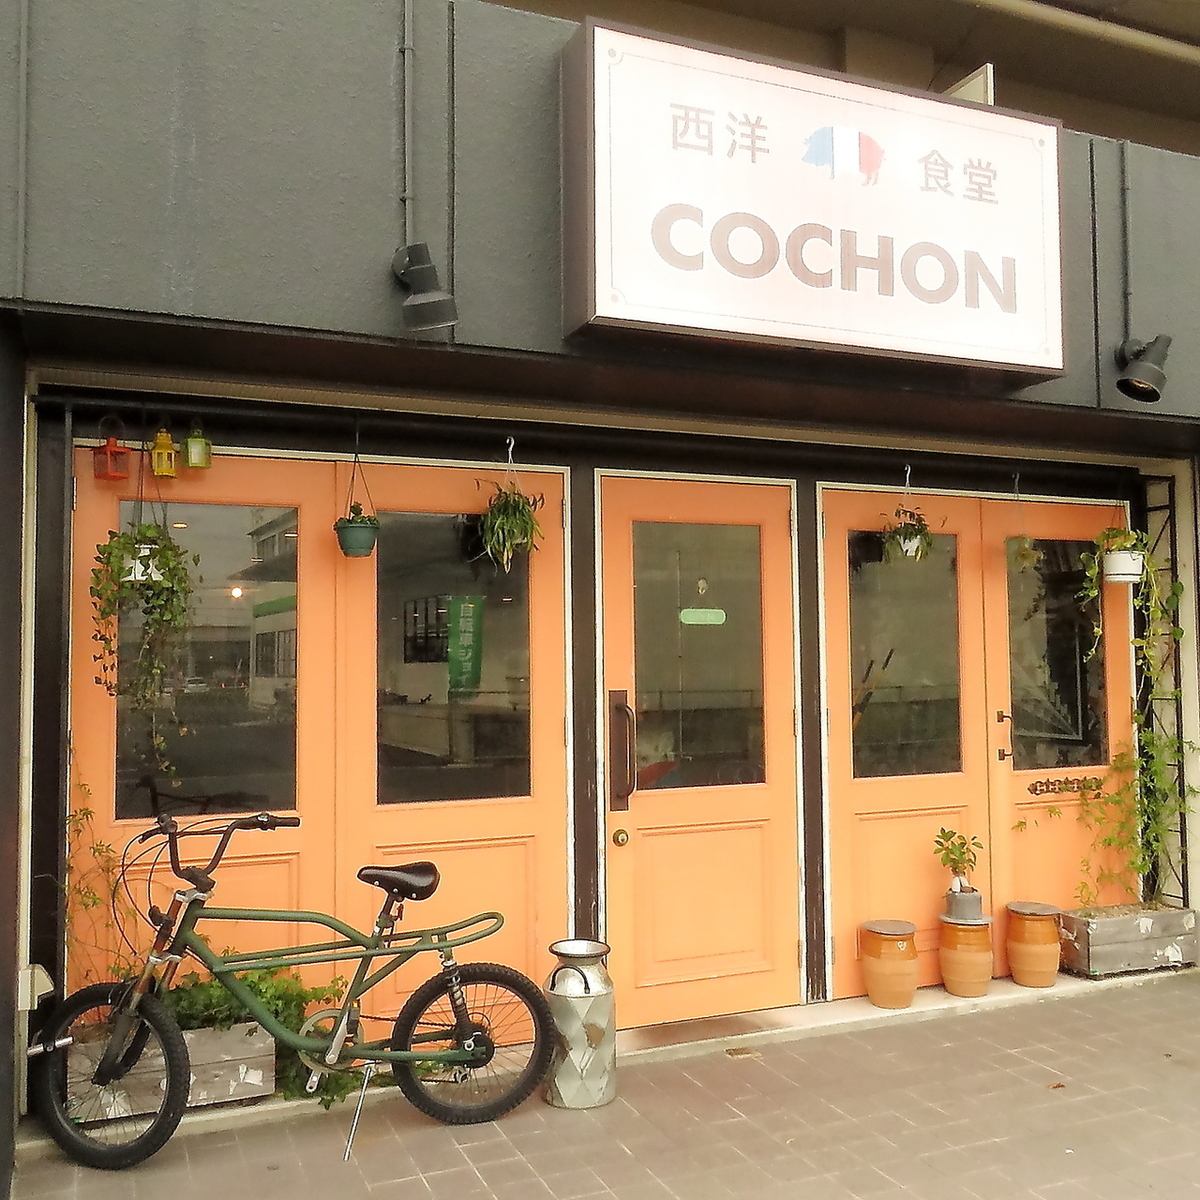 아오야마 역에서 도보 5 분! 점심 · 저녁 영업하고있는 서양 식당 Cochon ♪